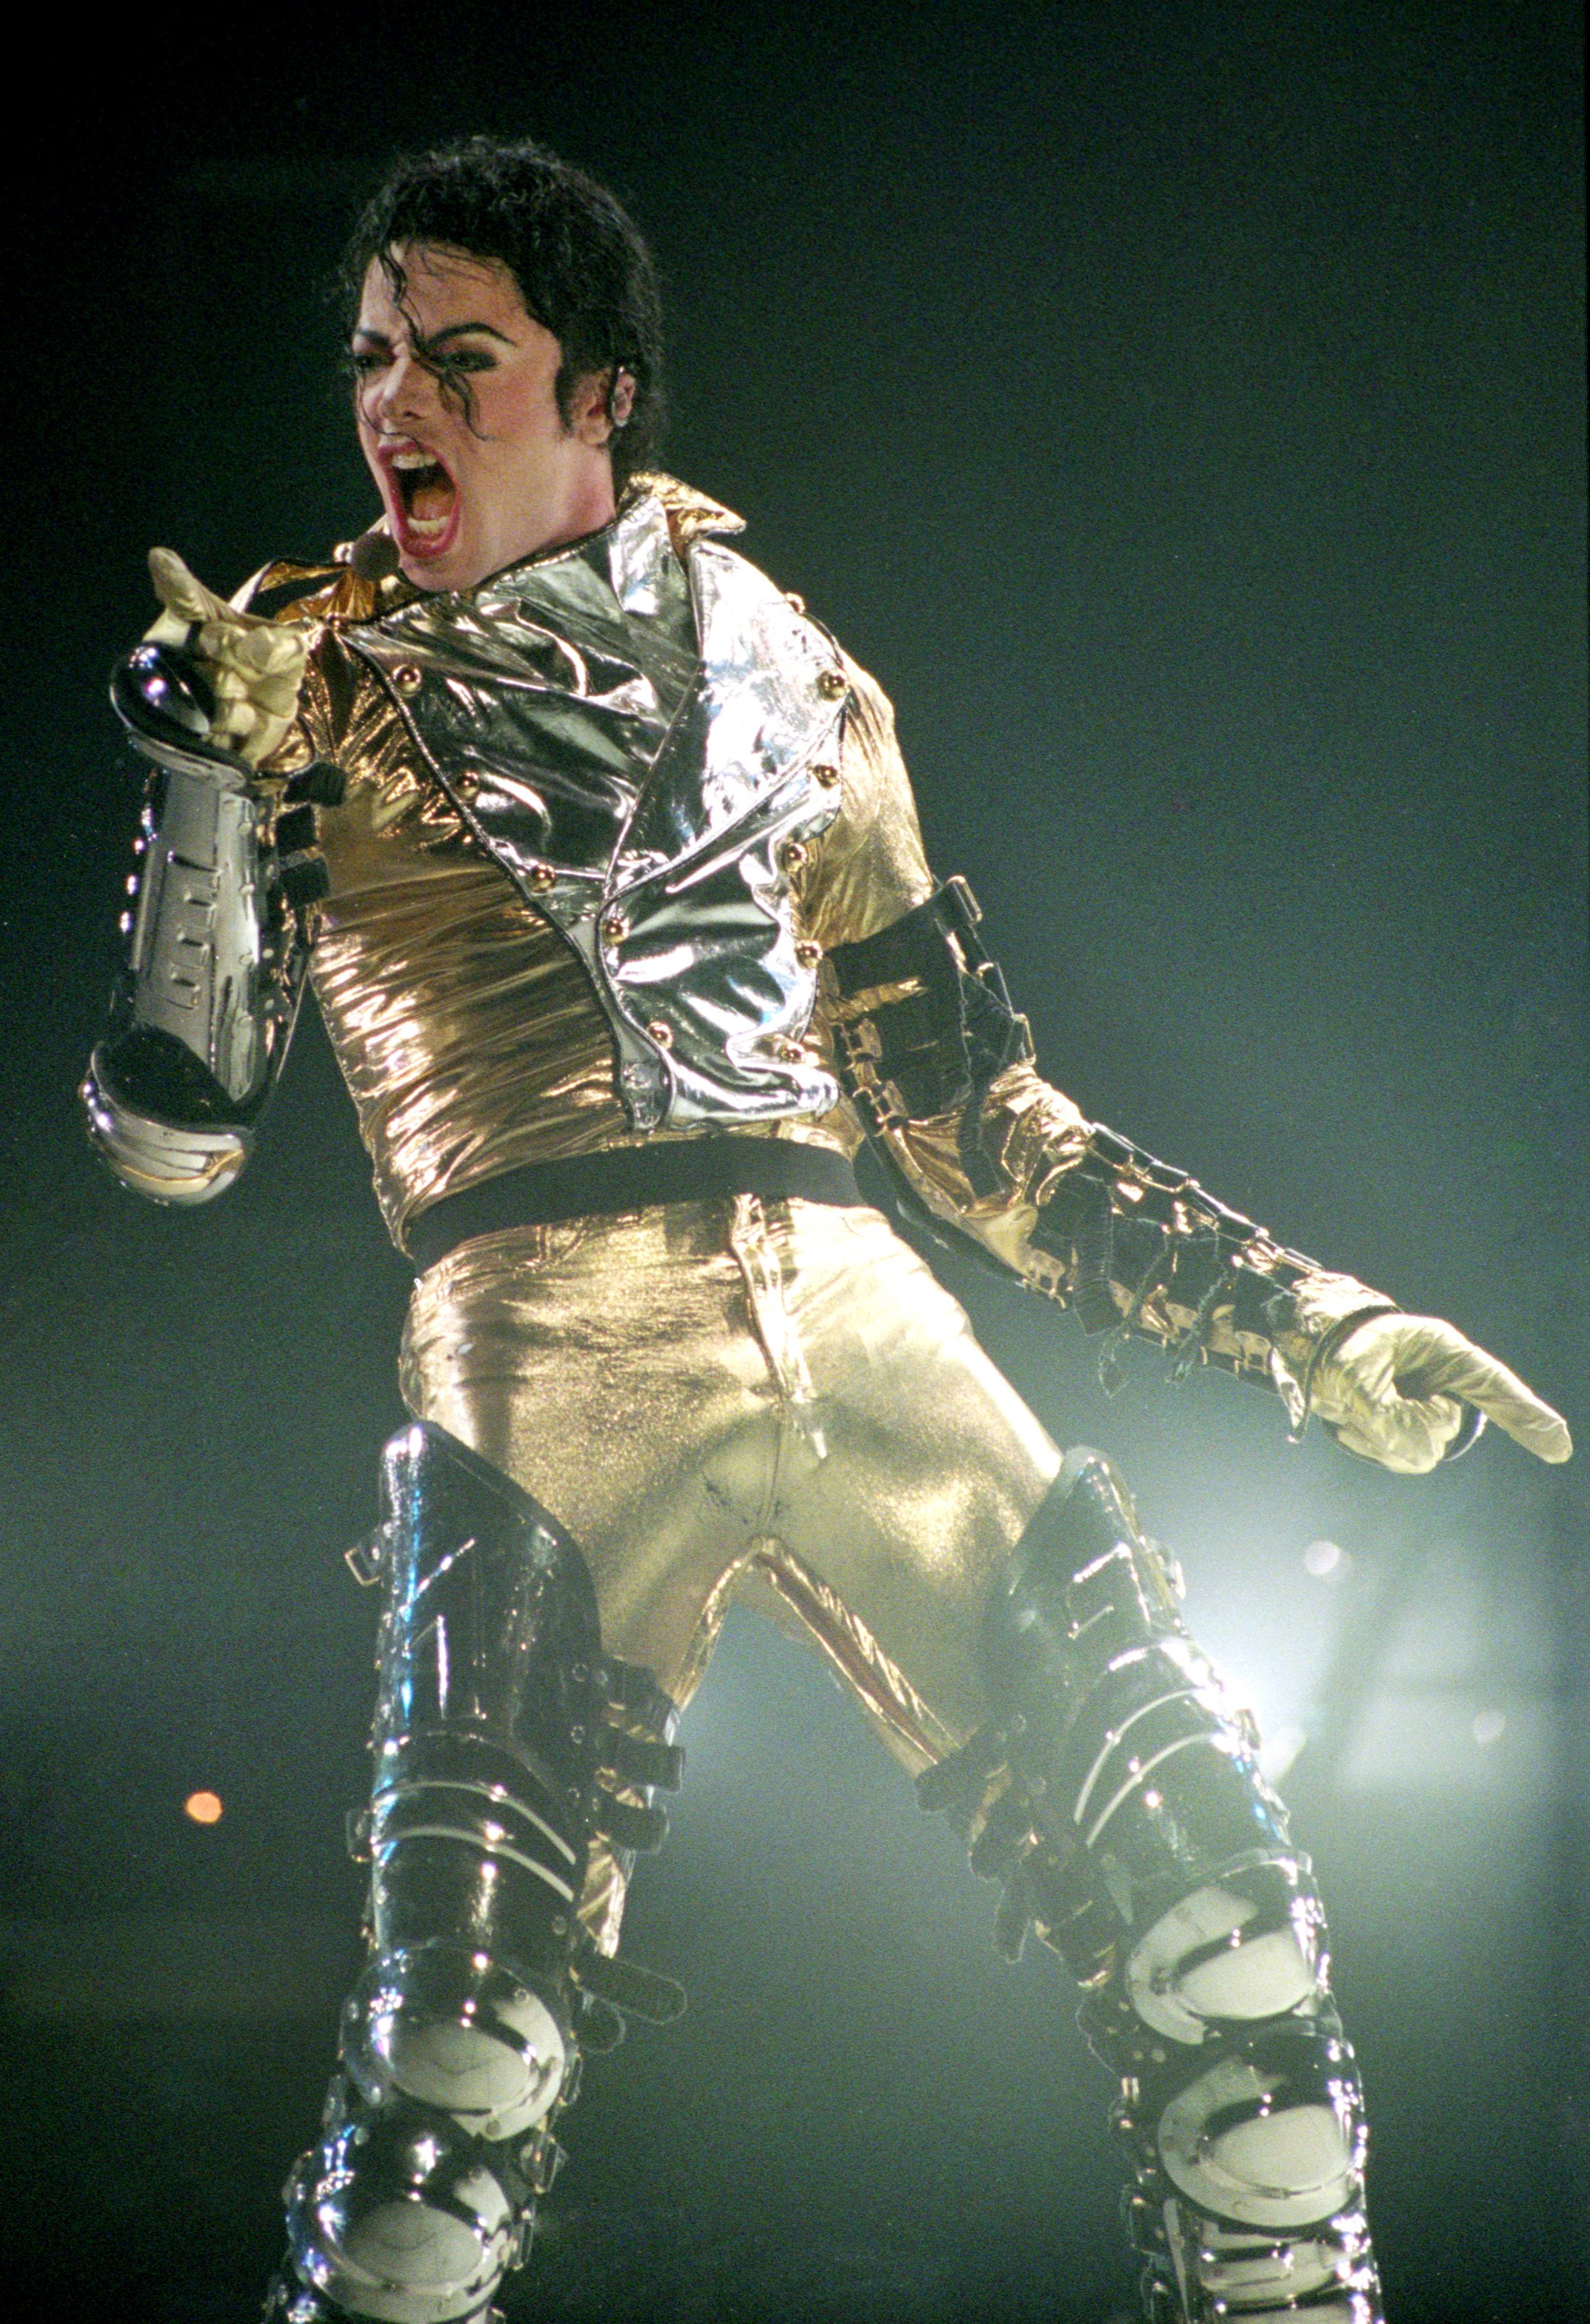 Michael Jackson se produit sur scène lors du concert de la tournée mondiale "HIStory" le 10 novembre 1996 à Auckland, en Nouvelle-Zélande. | Source : Getty Images.